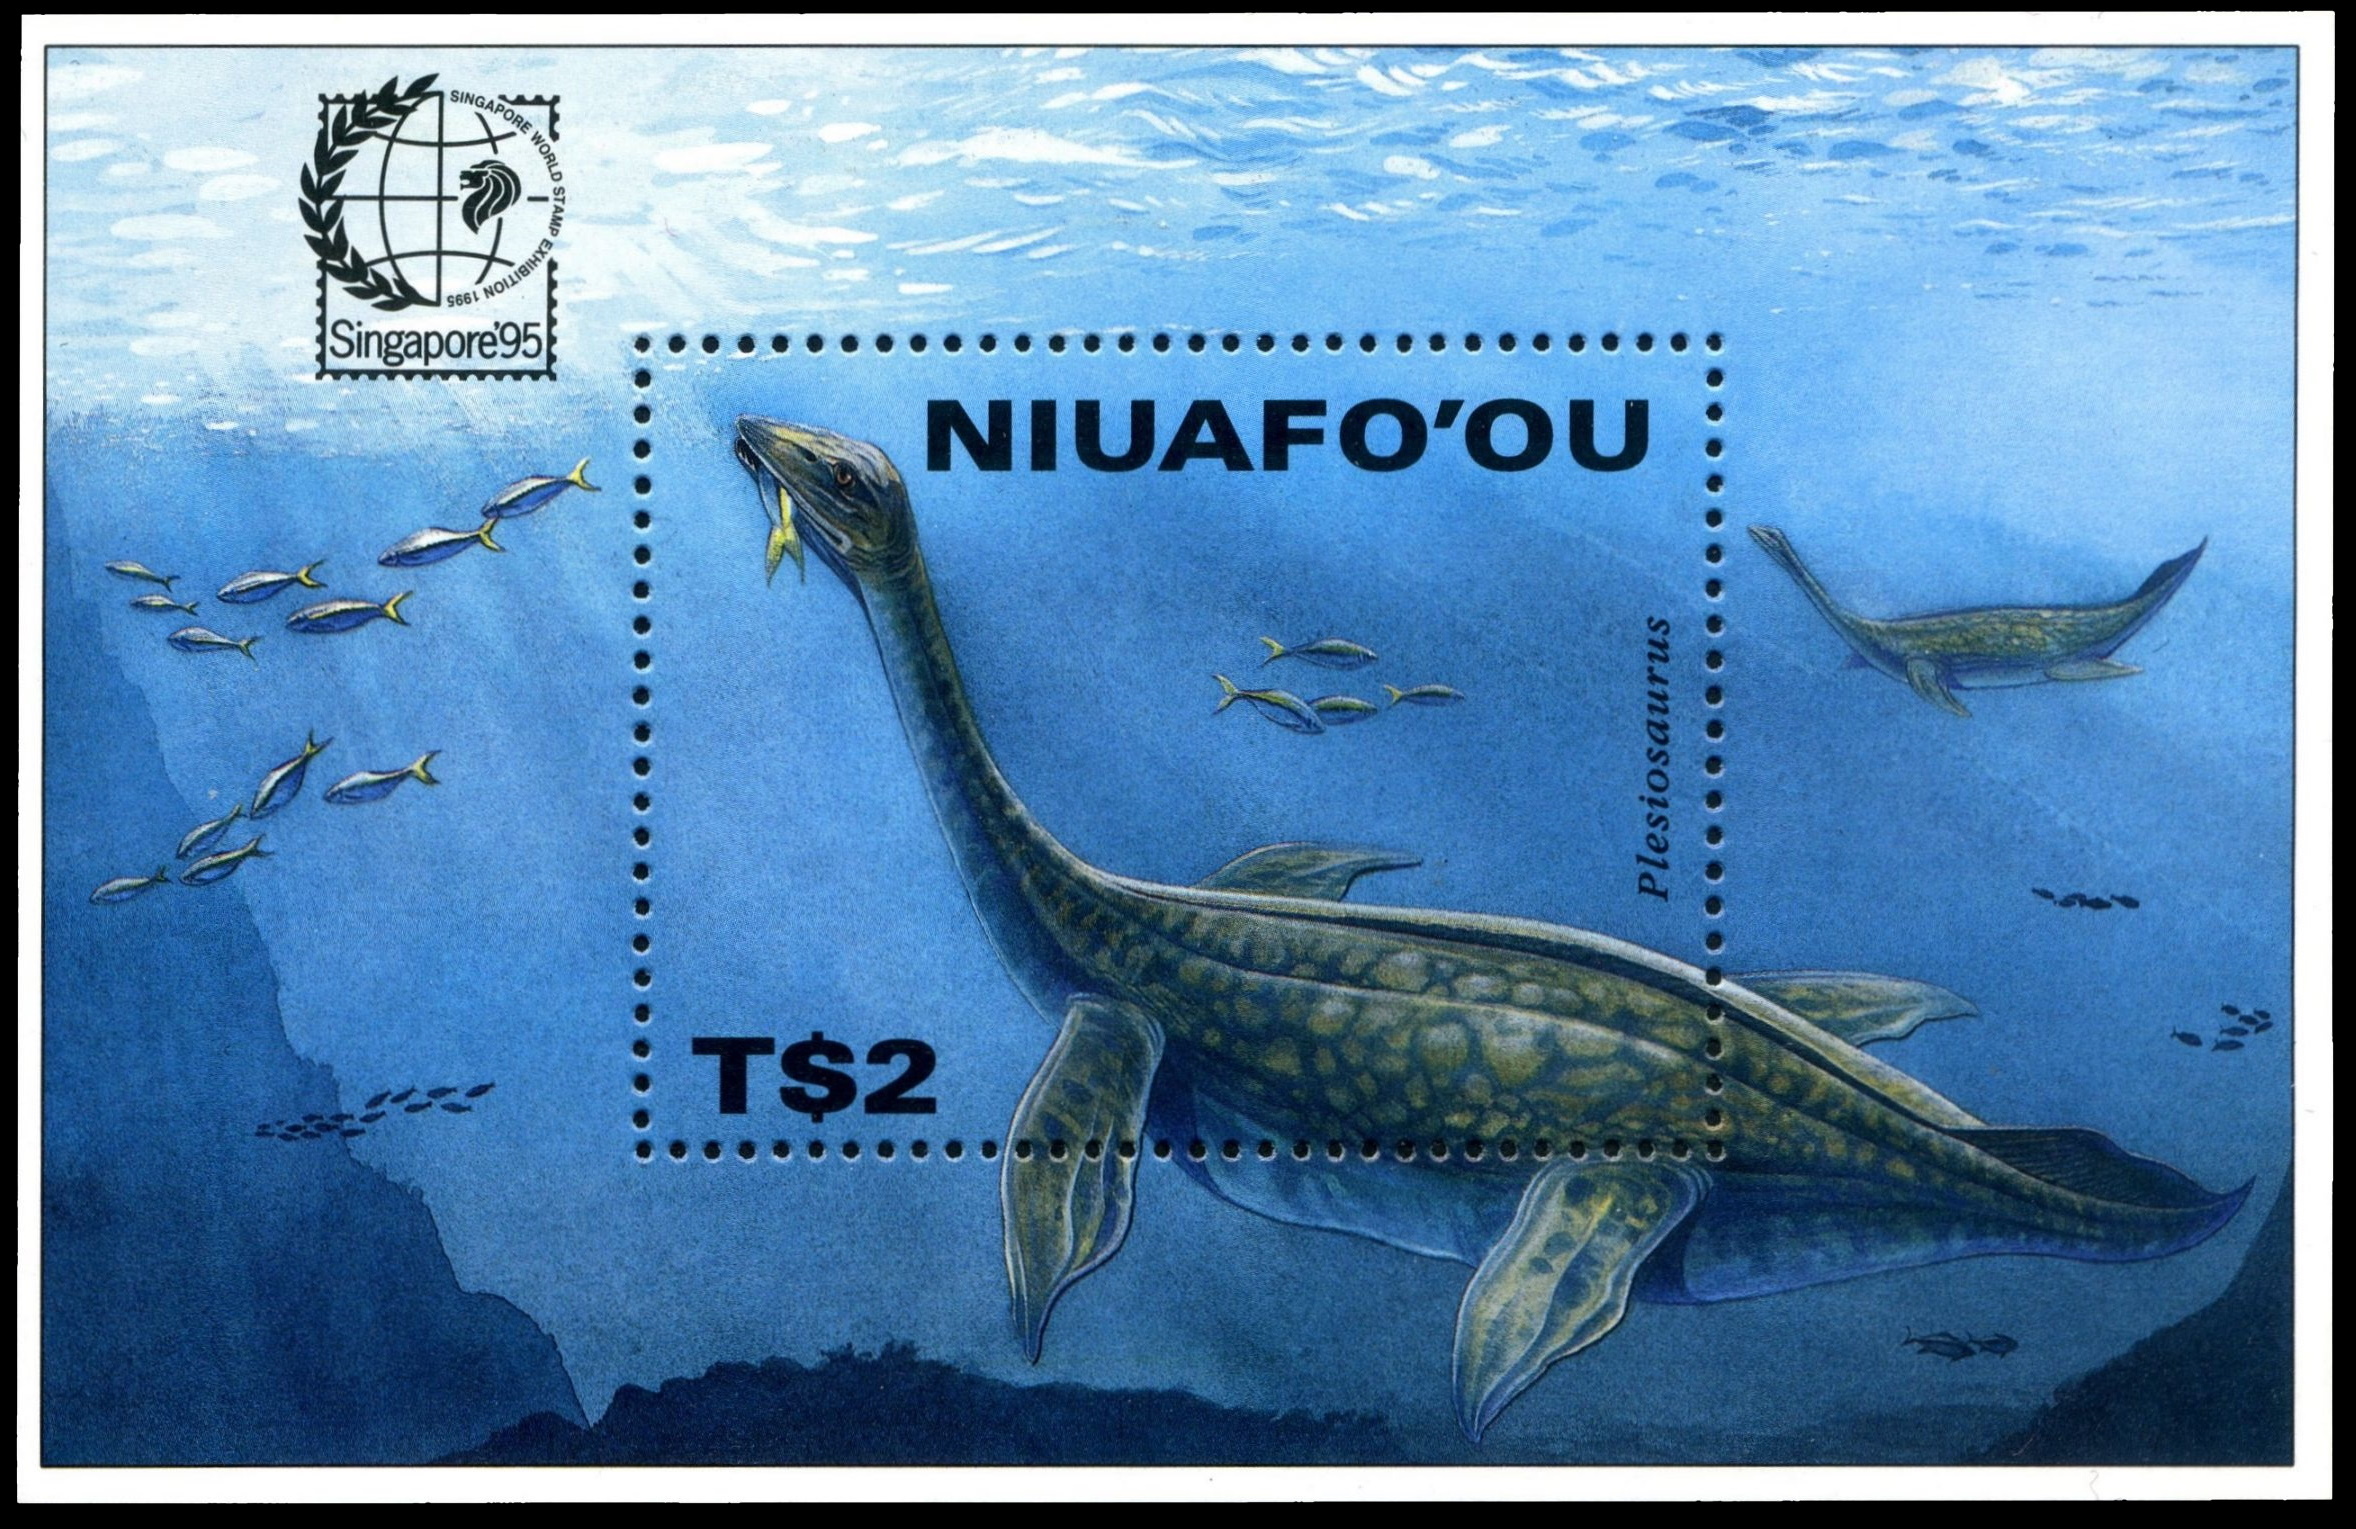 Plesiosaurus on stamp of New Niuafo’ou